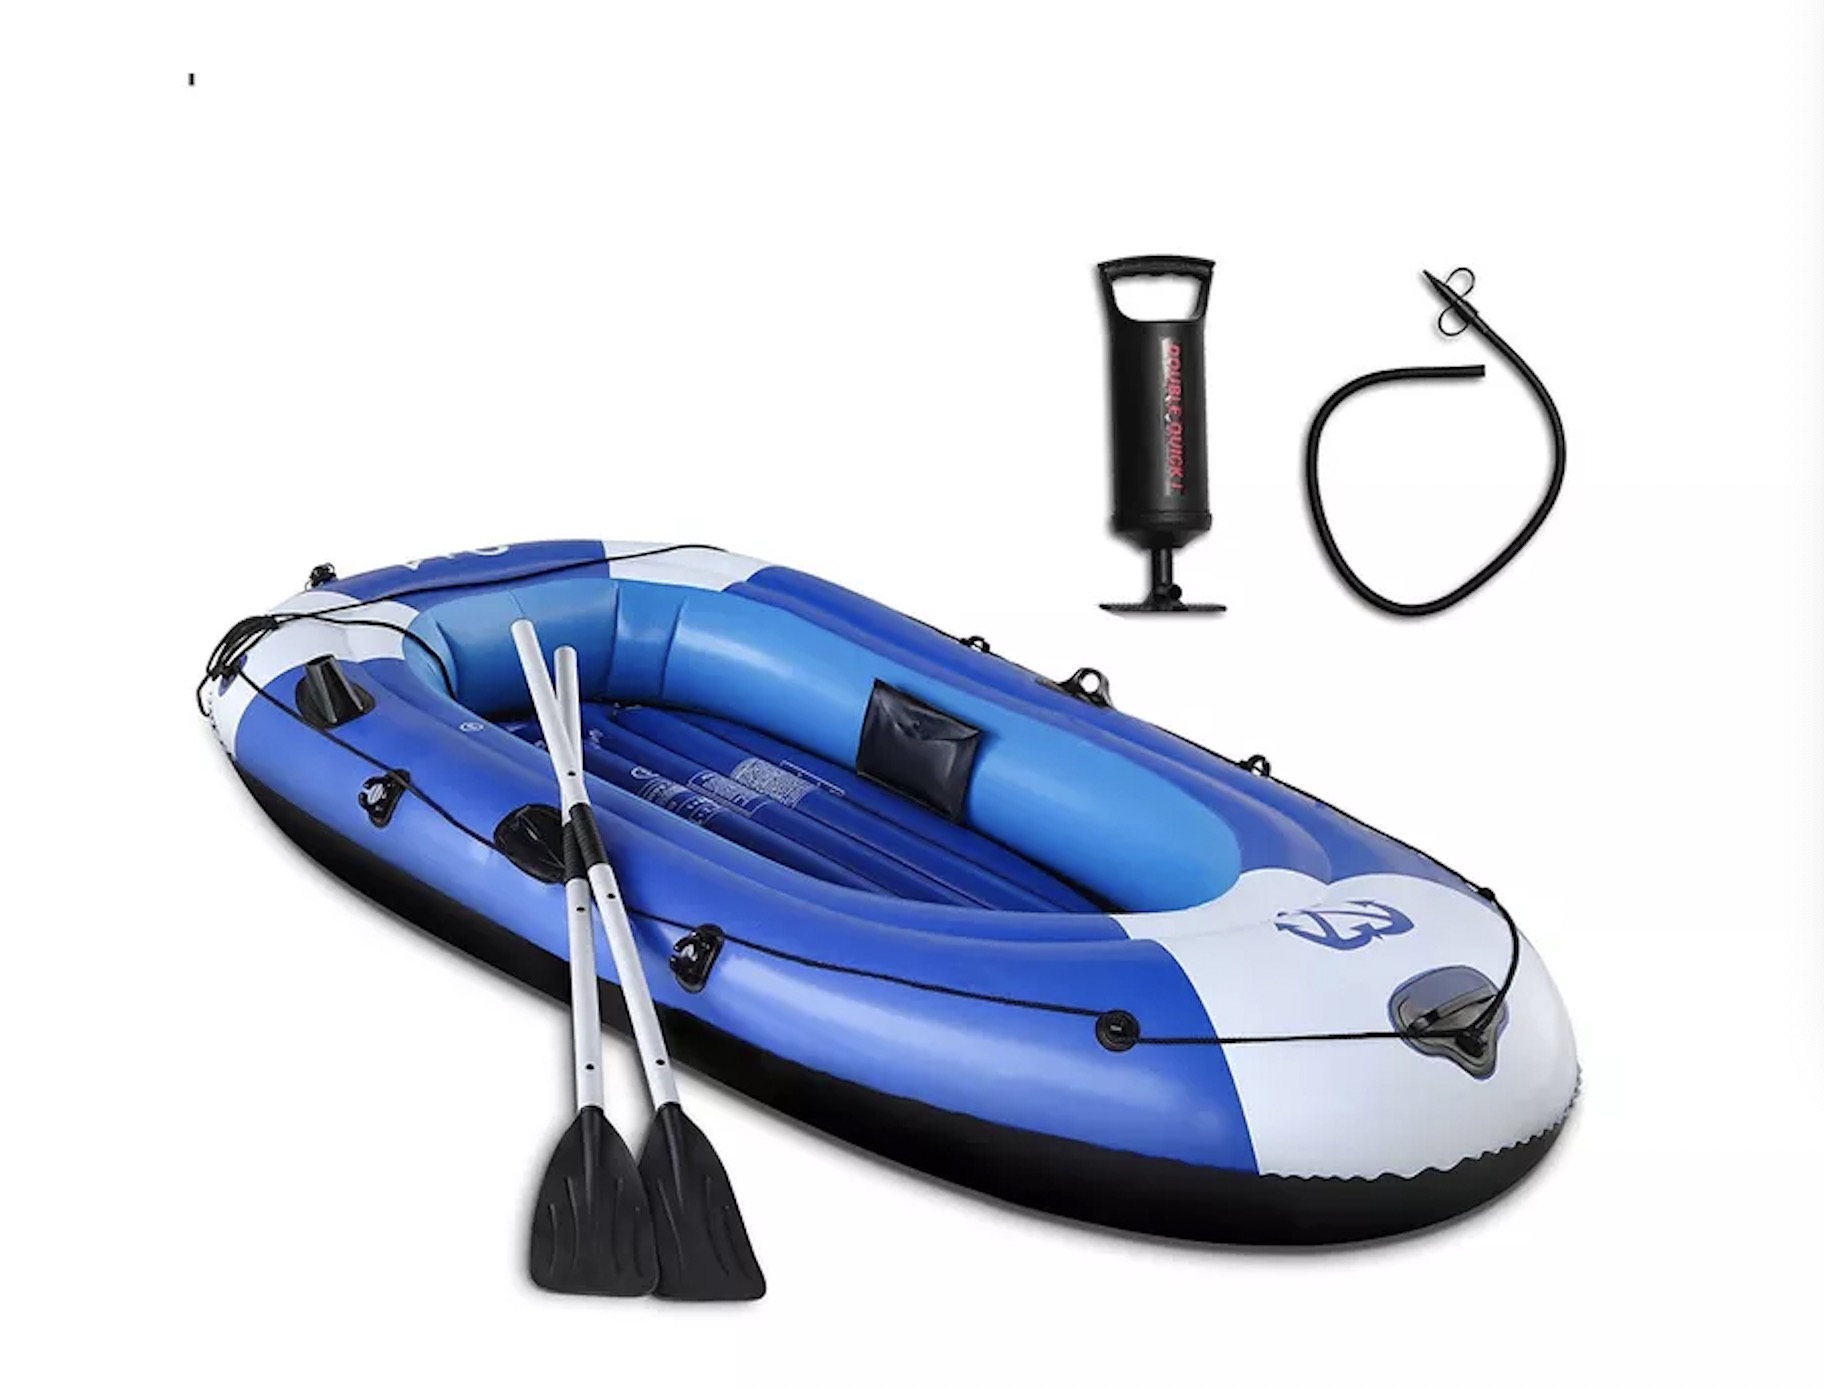 Amazon warm verkoop druppelsteek PVC Verdik Opblaas Roei Lugvloer Visvangboot met roeispan en pomp vir volwassene